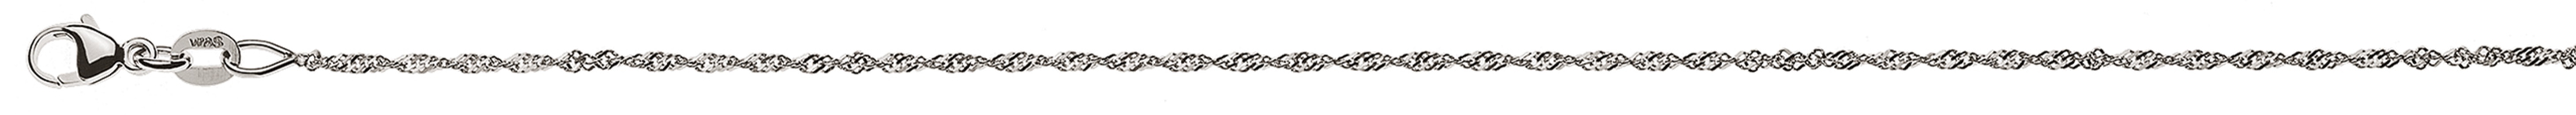 AURONOS Style Halskette Weissgold 9K Singapurkette 60cm 1.2mm